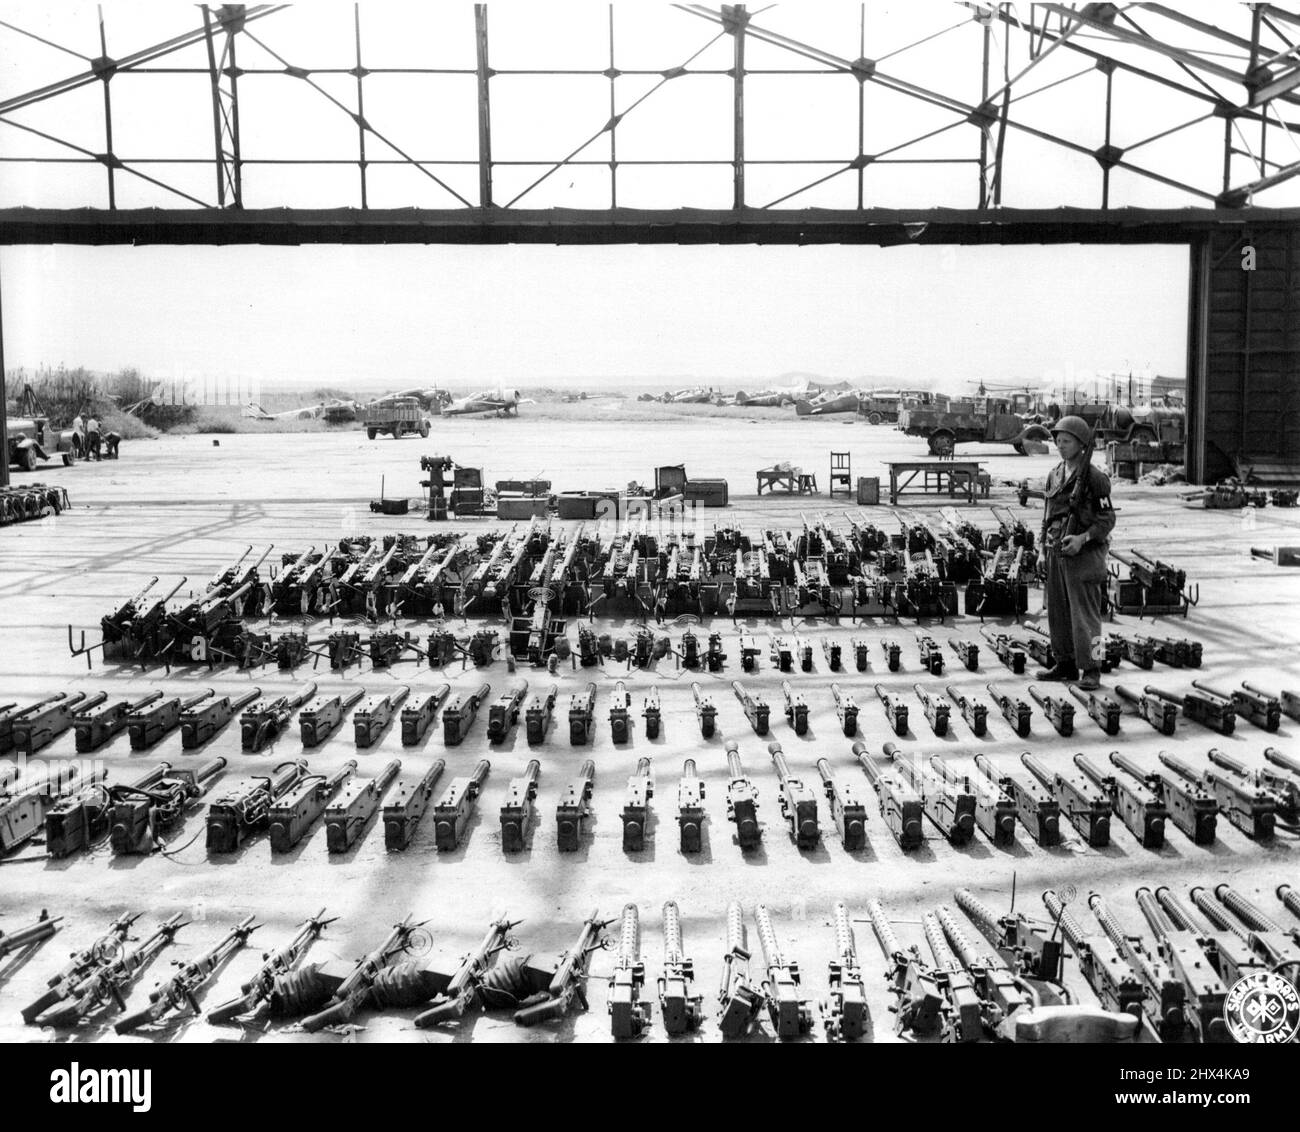 Jap. Armi.... Confisca giapponese ***** Un hangar all'aeroporto di Tashio, Honshu, una raccolta ***** Per le armi e le munizioni giapponesi. Ottobre 13, 1945. (Foto di US Signal Corps Photo). Foto Stock